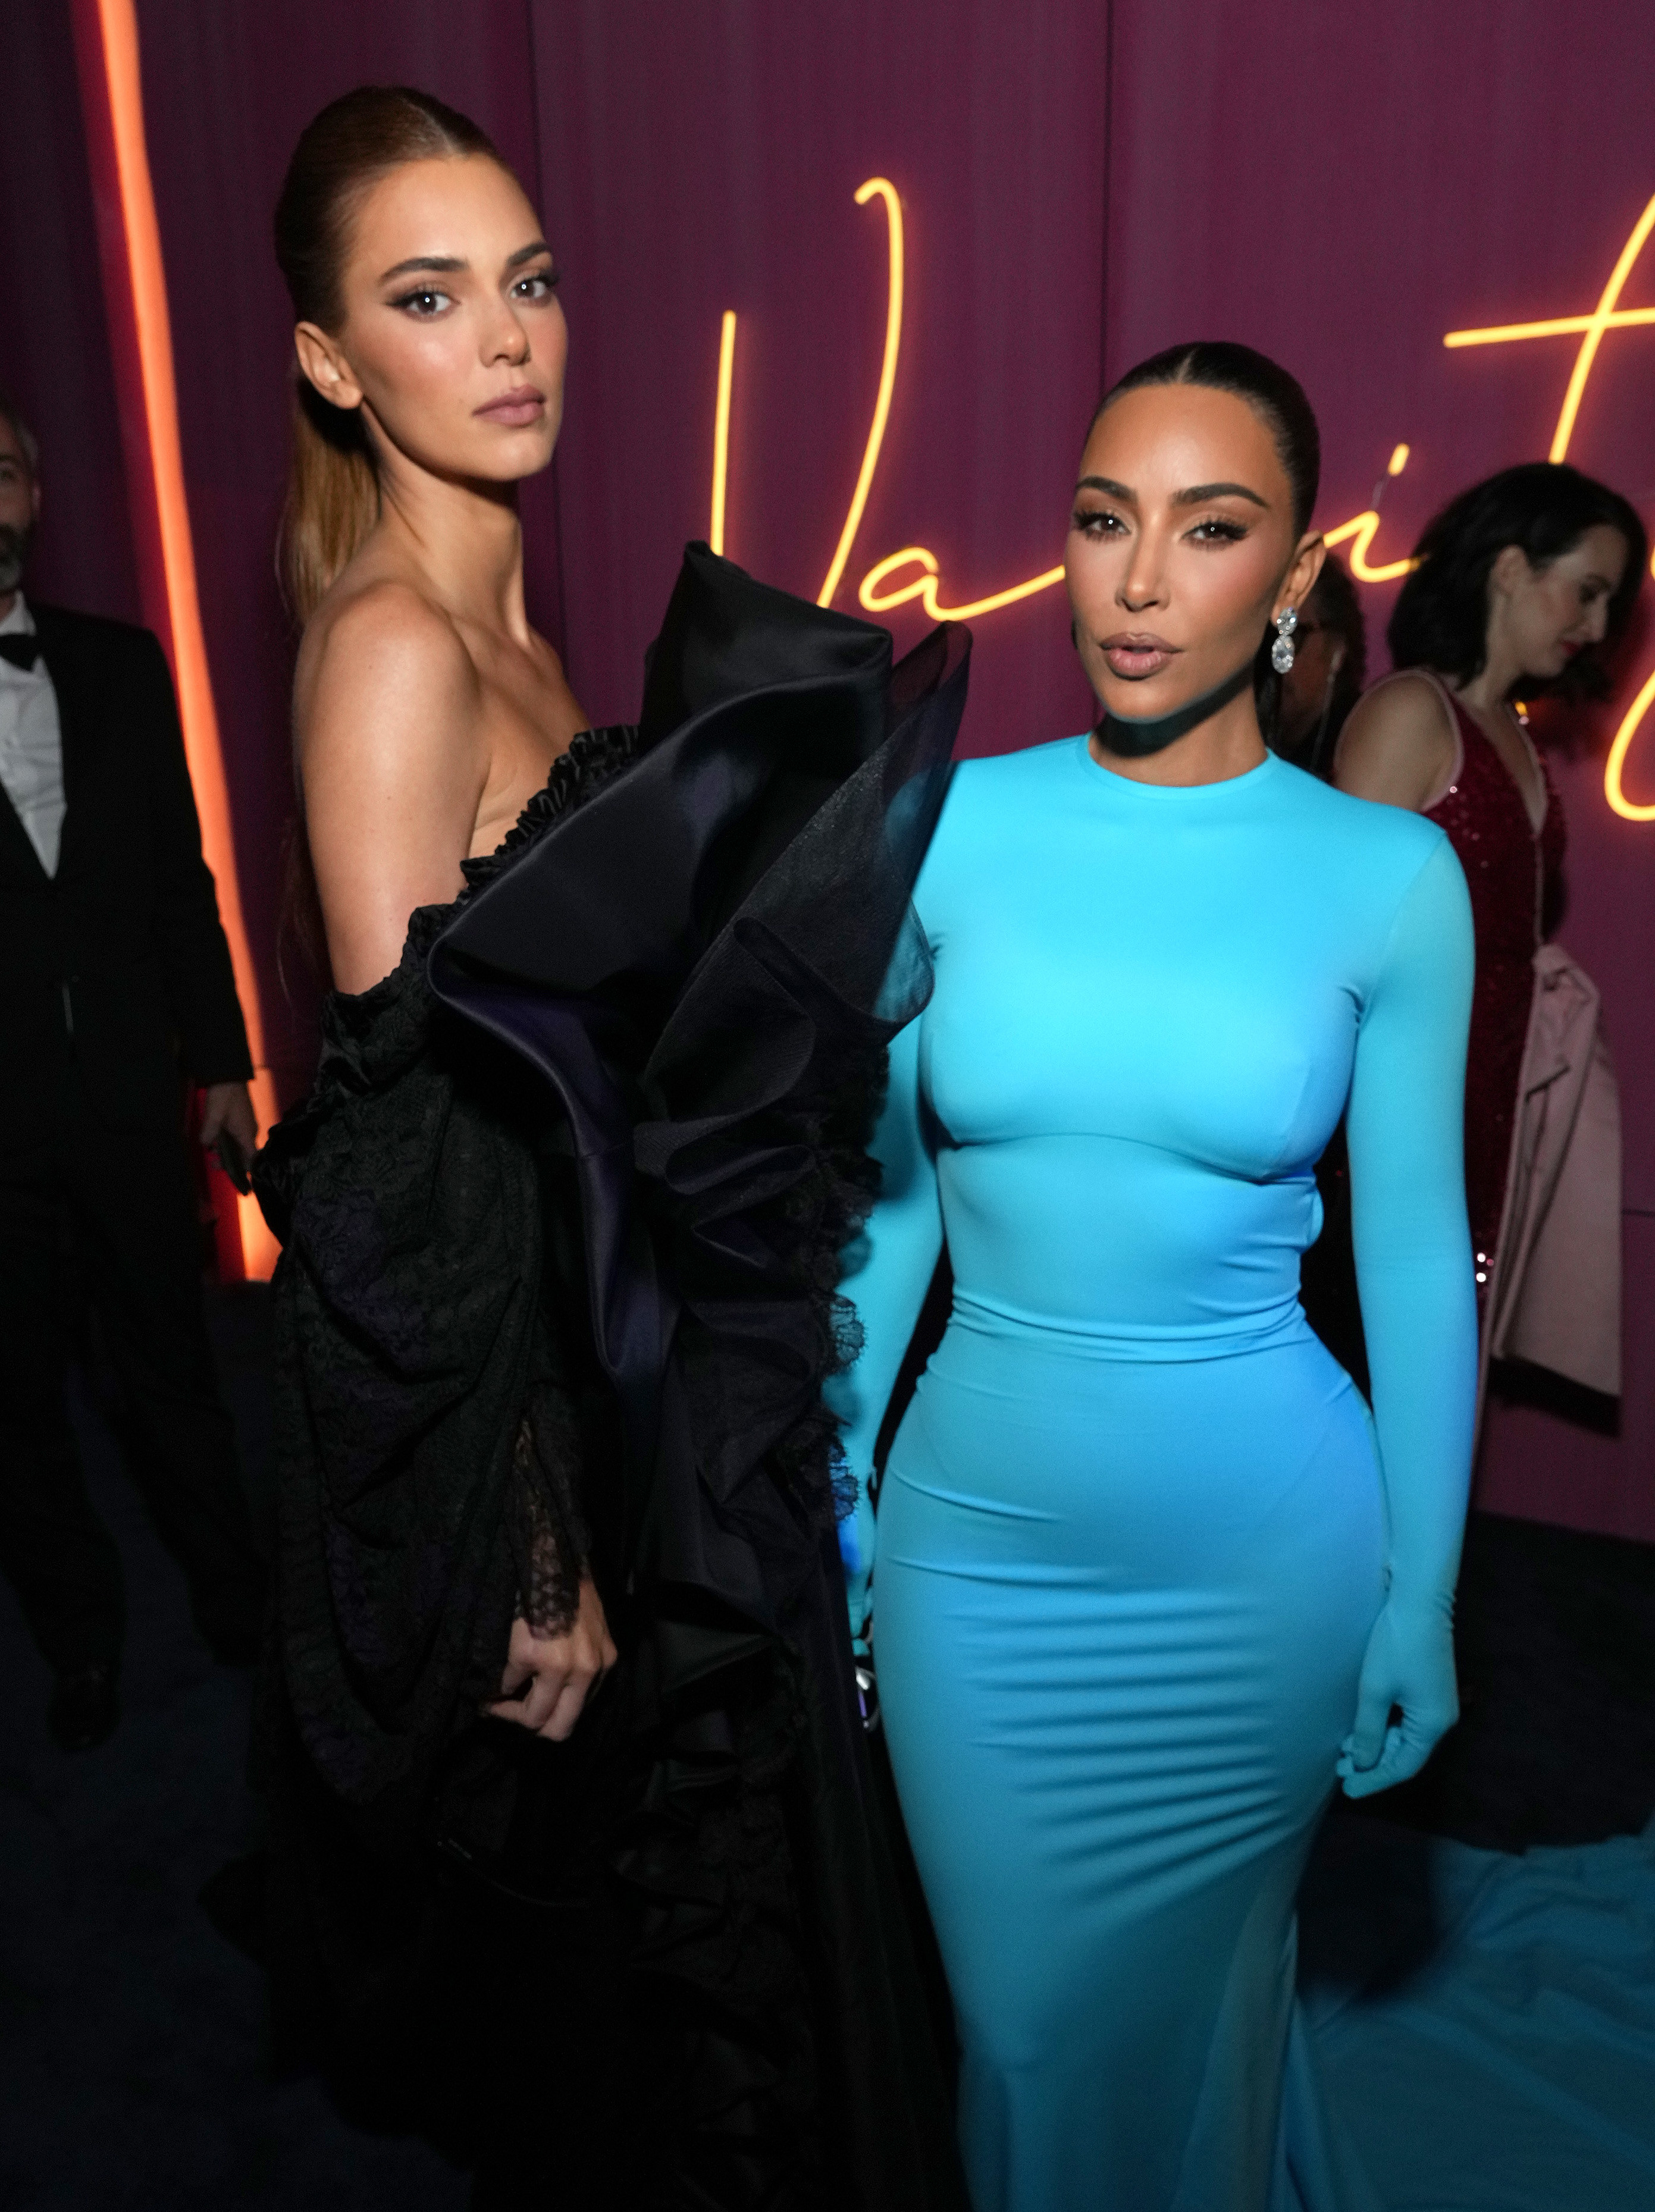 Kim Kardashian Wear 4 Skintight Dolce & Gabbana Outfits in 1 Day